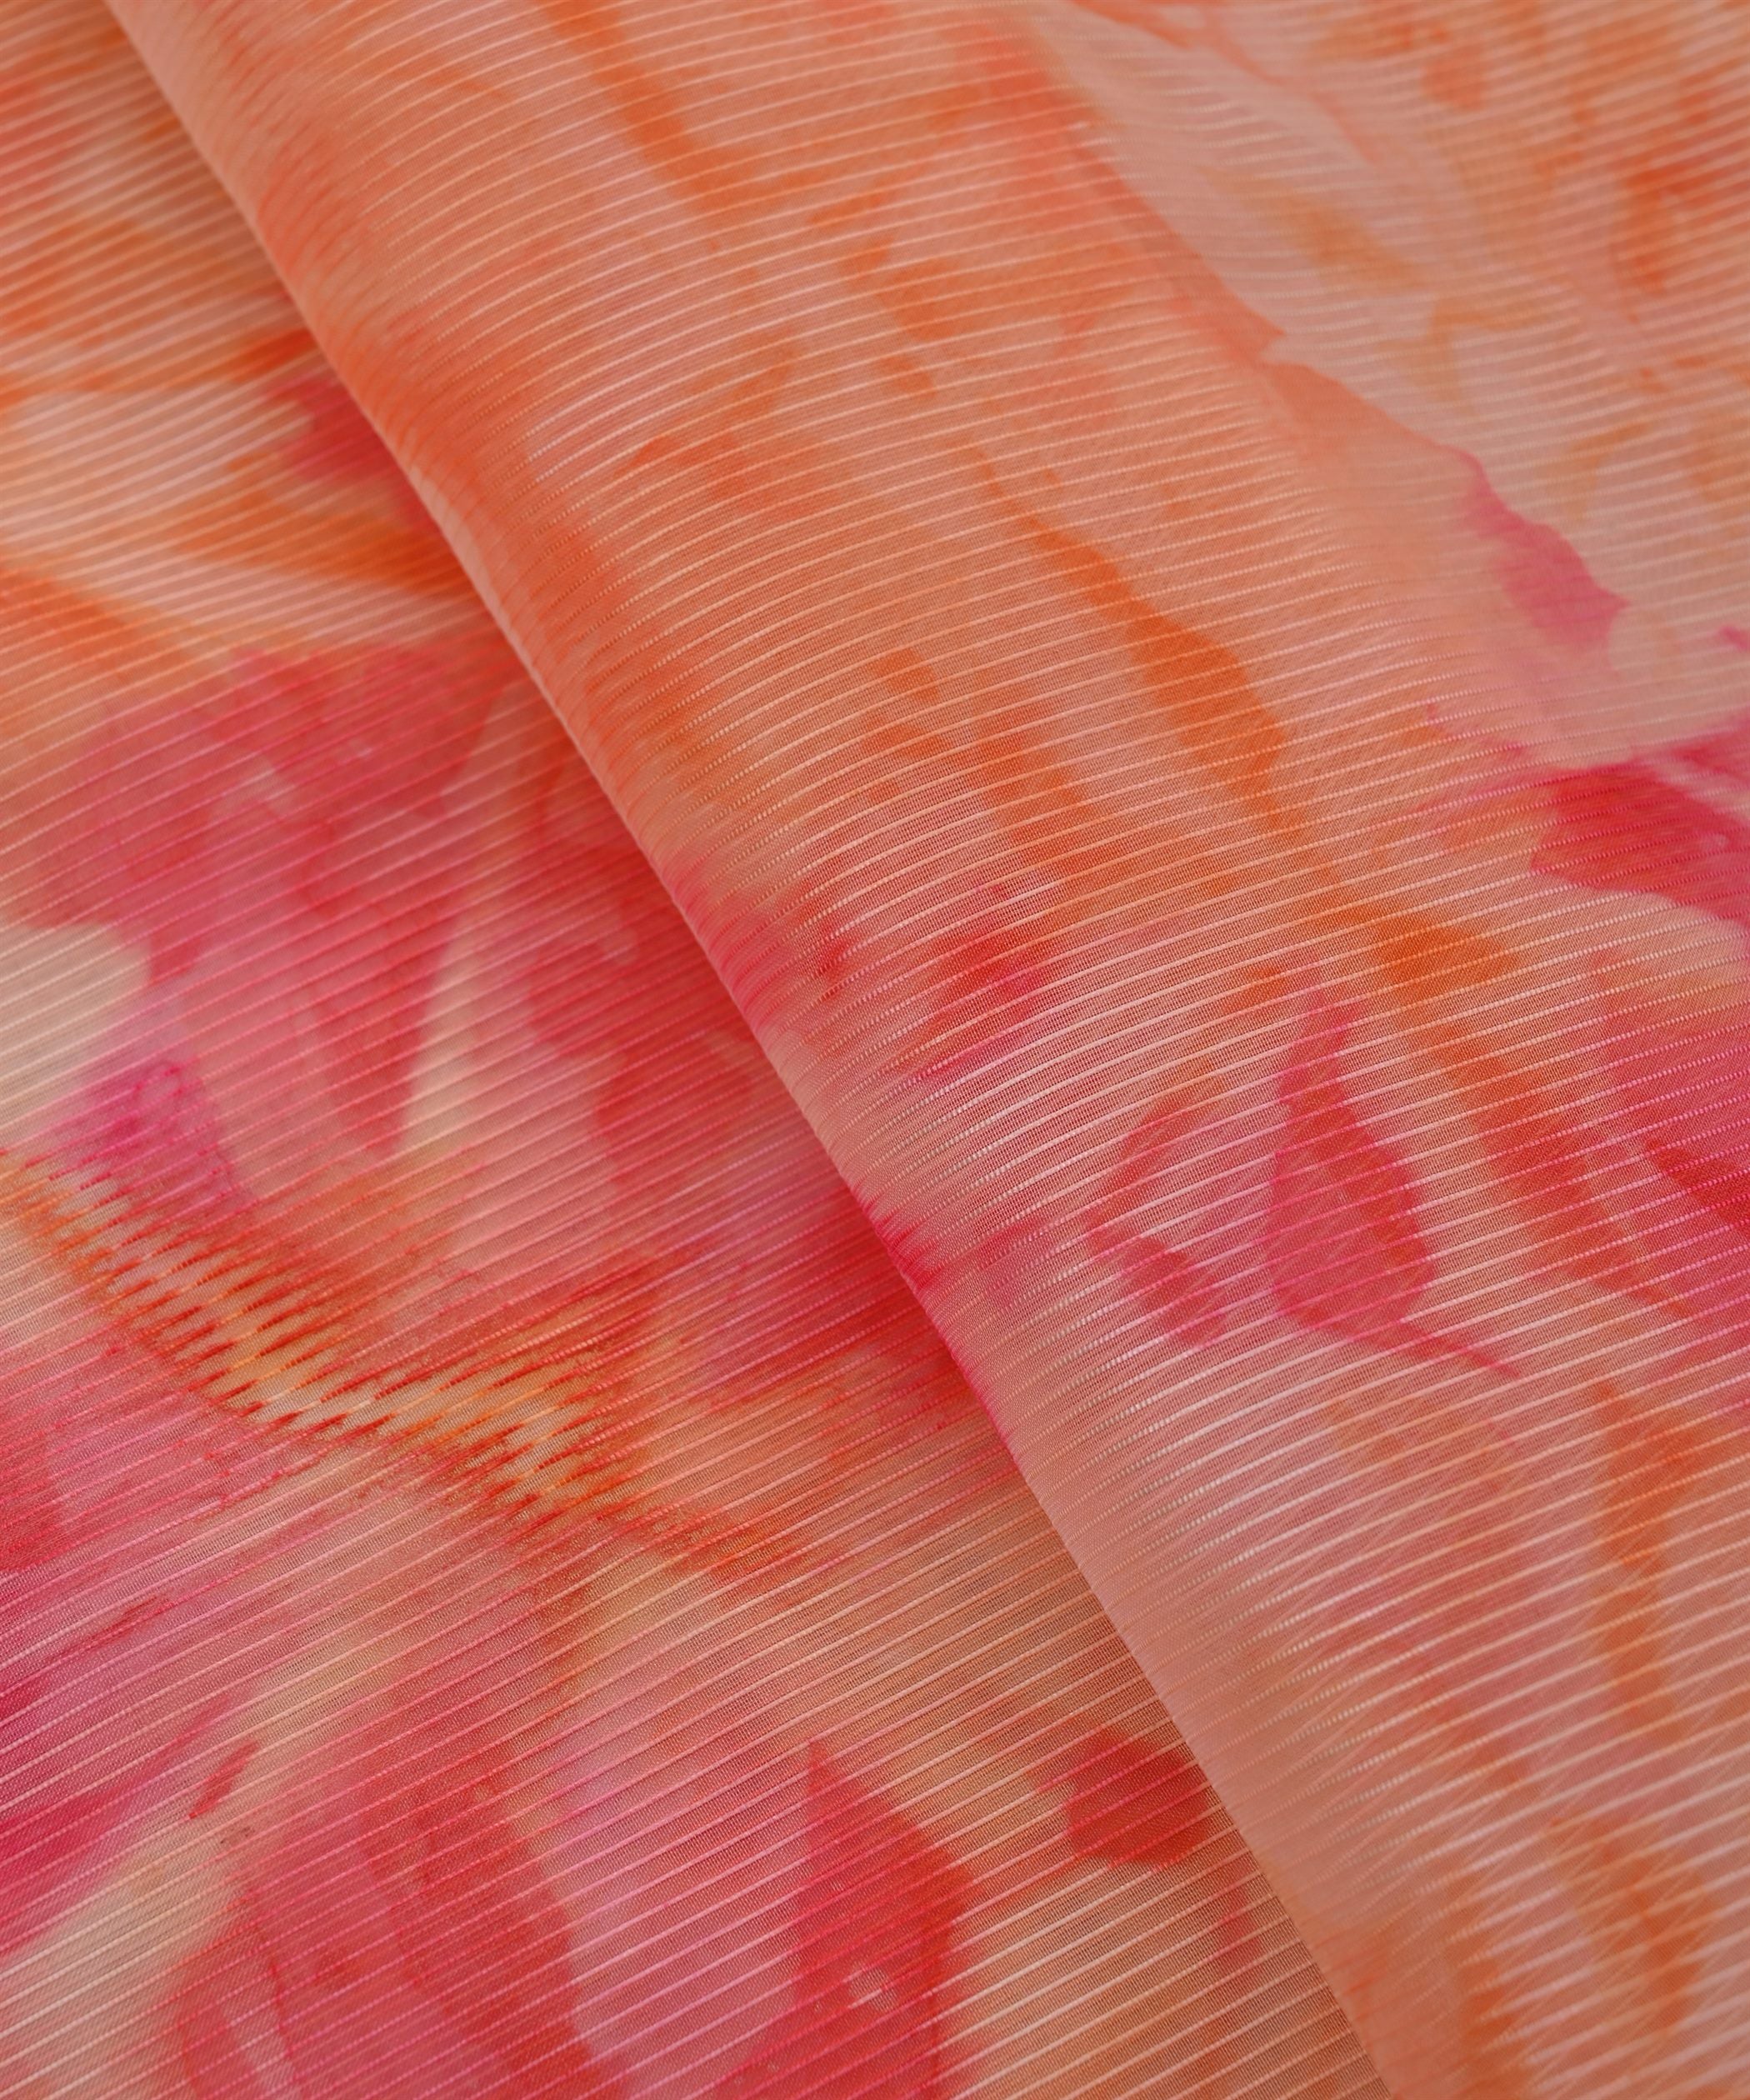 Orange Organza Fabric with Shibori Print